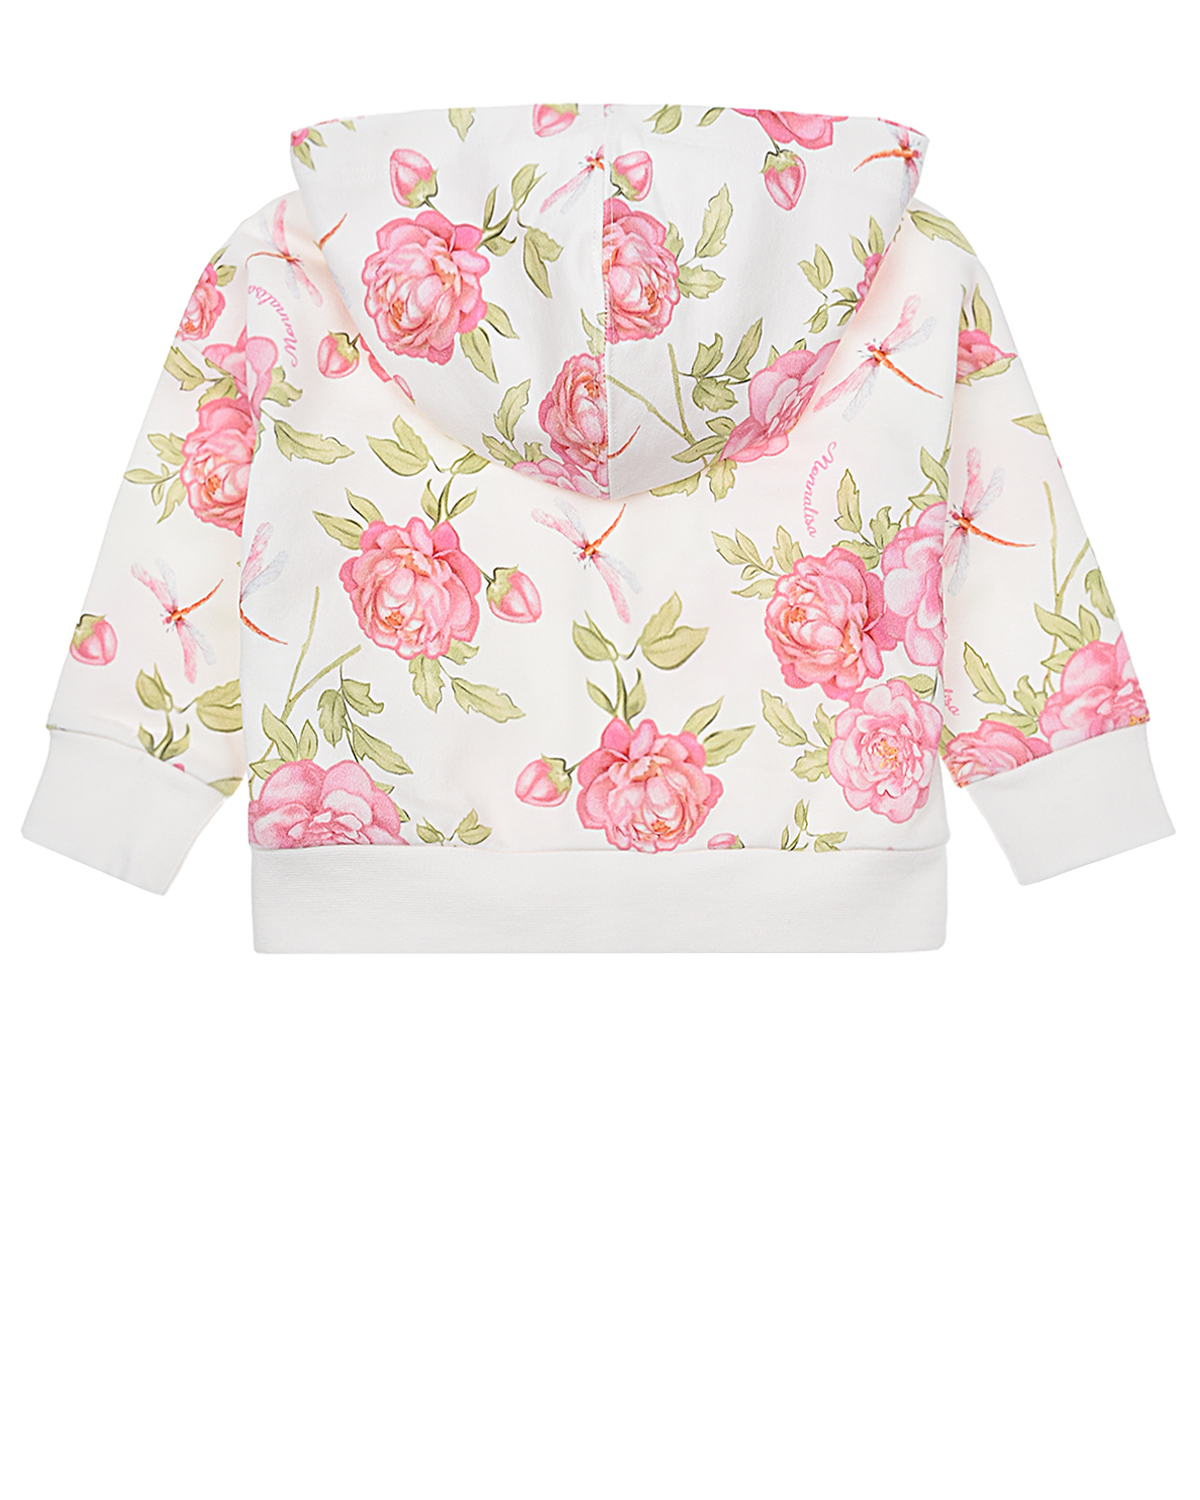 Спортивная куртка с принтом "розы" Monnalisa детская, размер 80, цвет мультиколор - фото 2